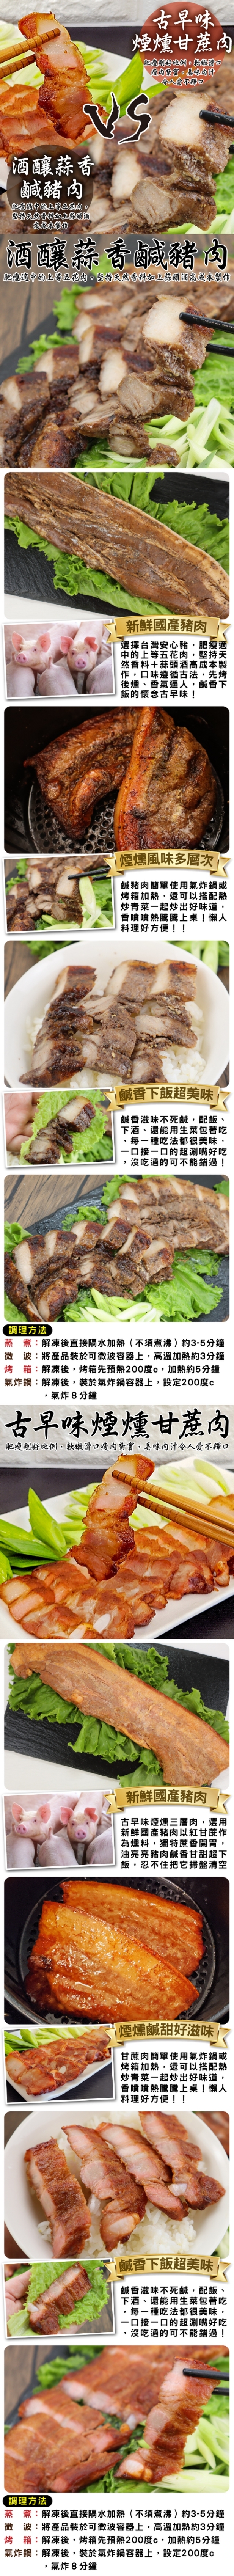 【三頓飯】酒釀蒜香鹹豬肉/甘蔗煙燻三層肉